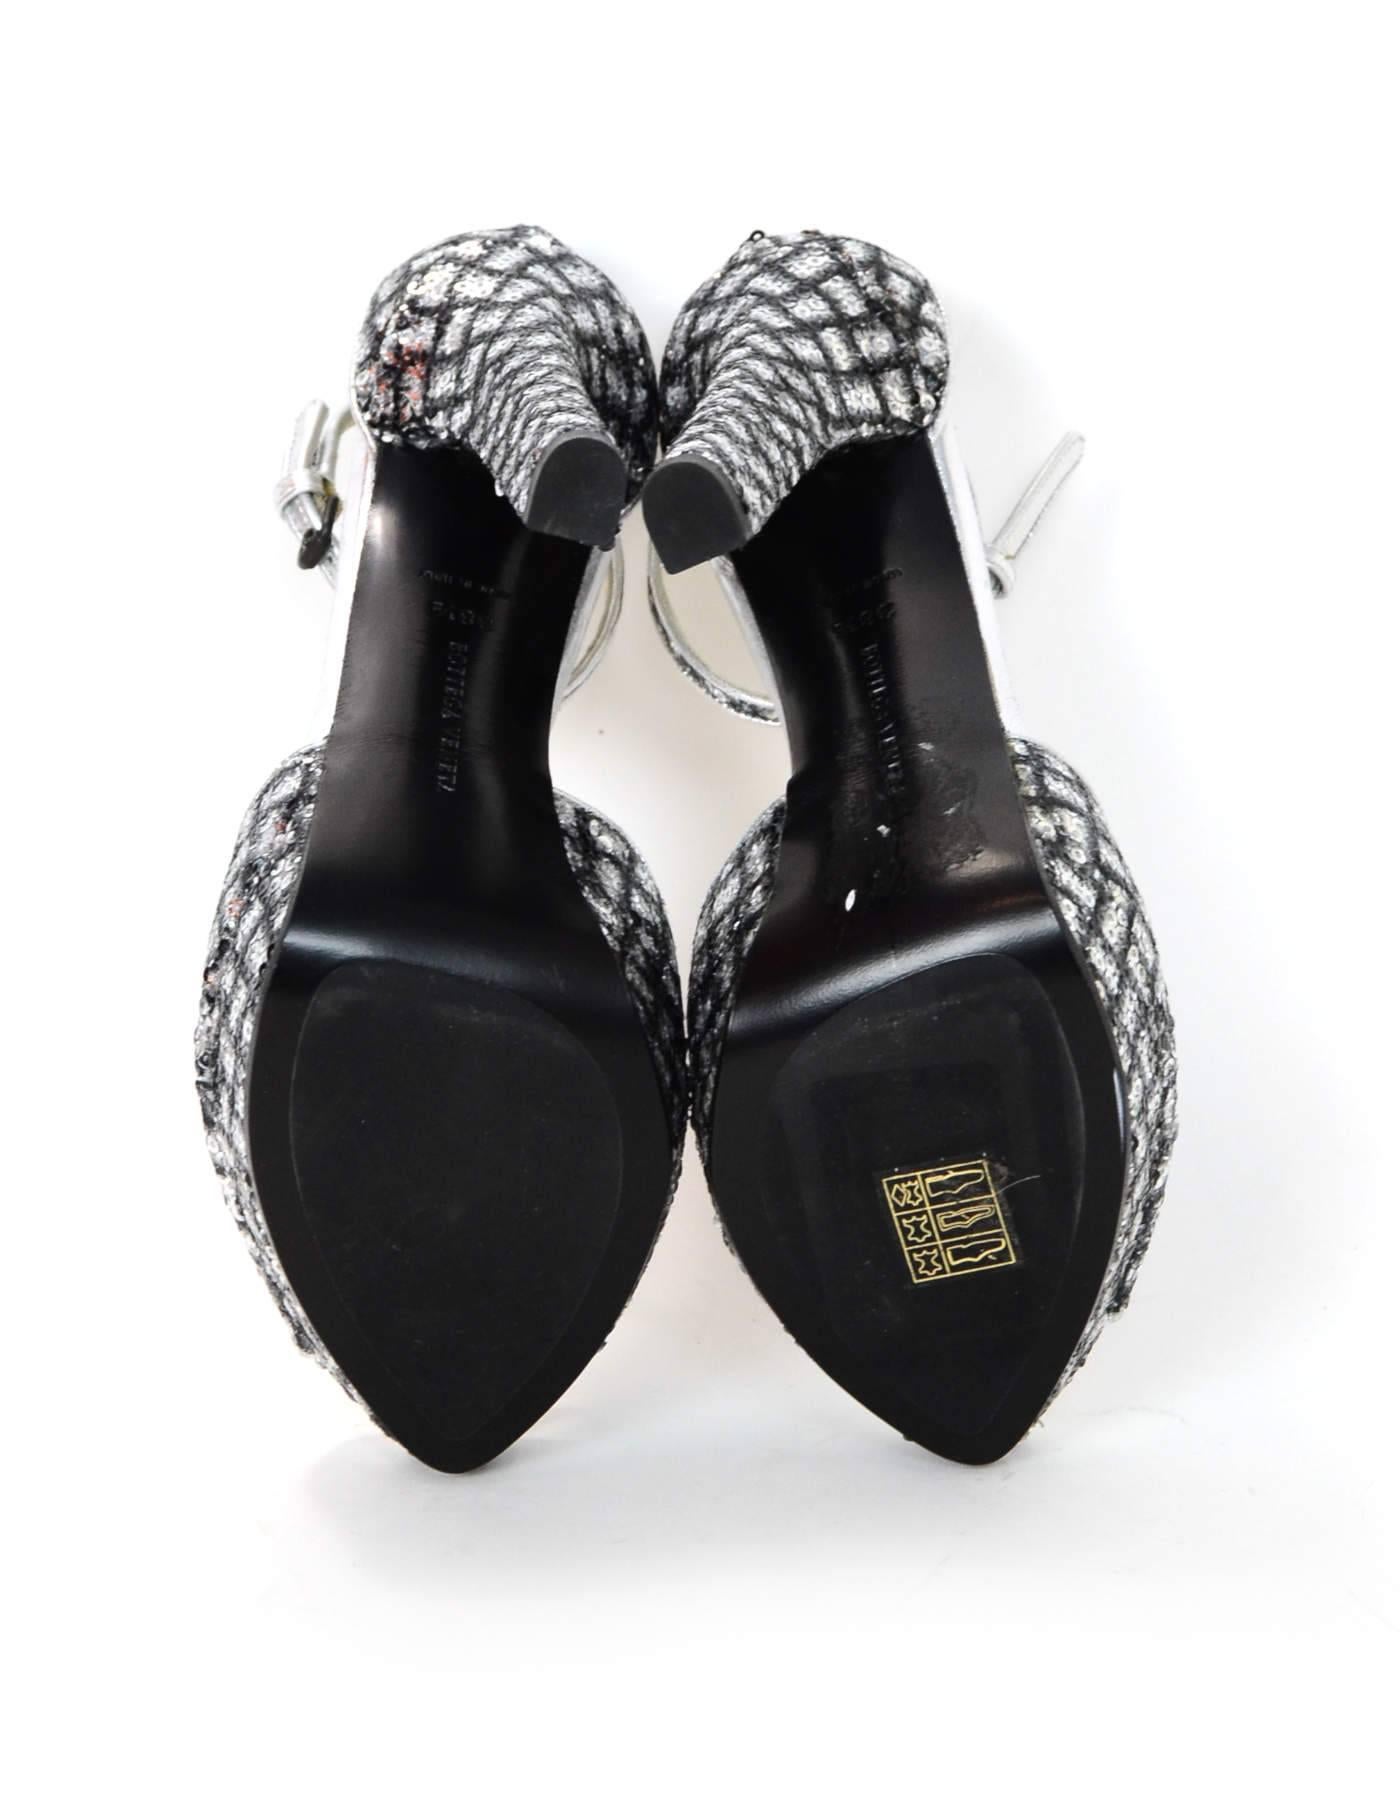 Bottega Veneta Silver Sequin Open-Toe Sandals Sz 38.5 NEW 1